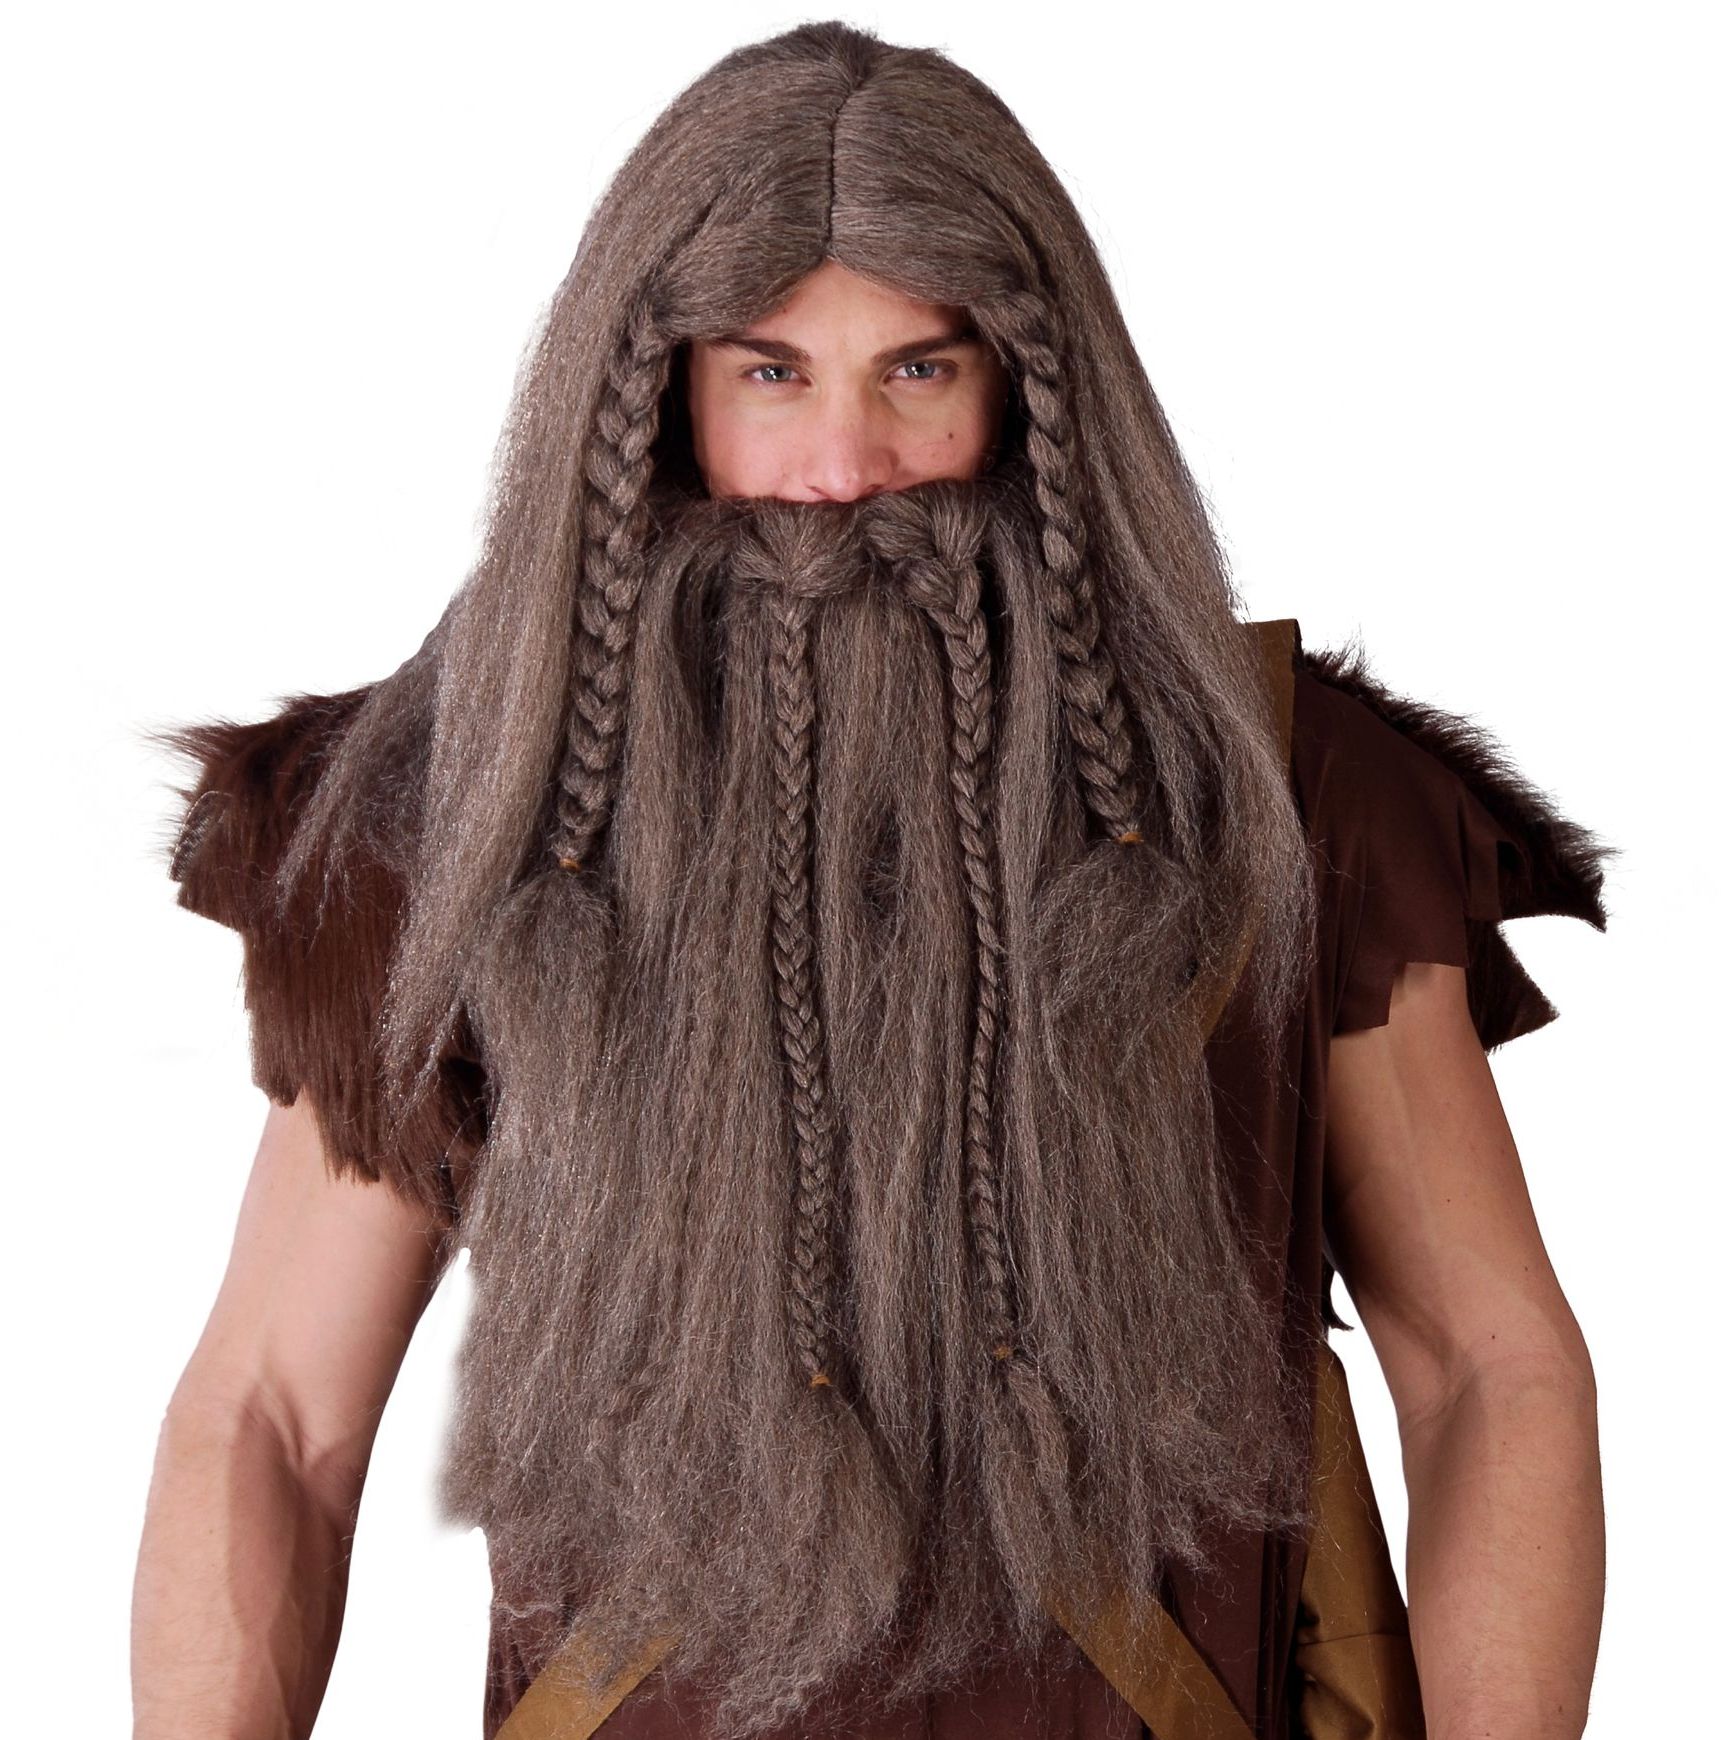 Grote Viking pruik en baard